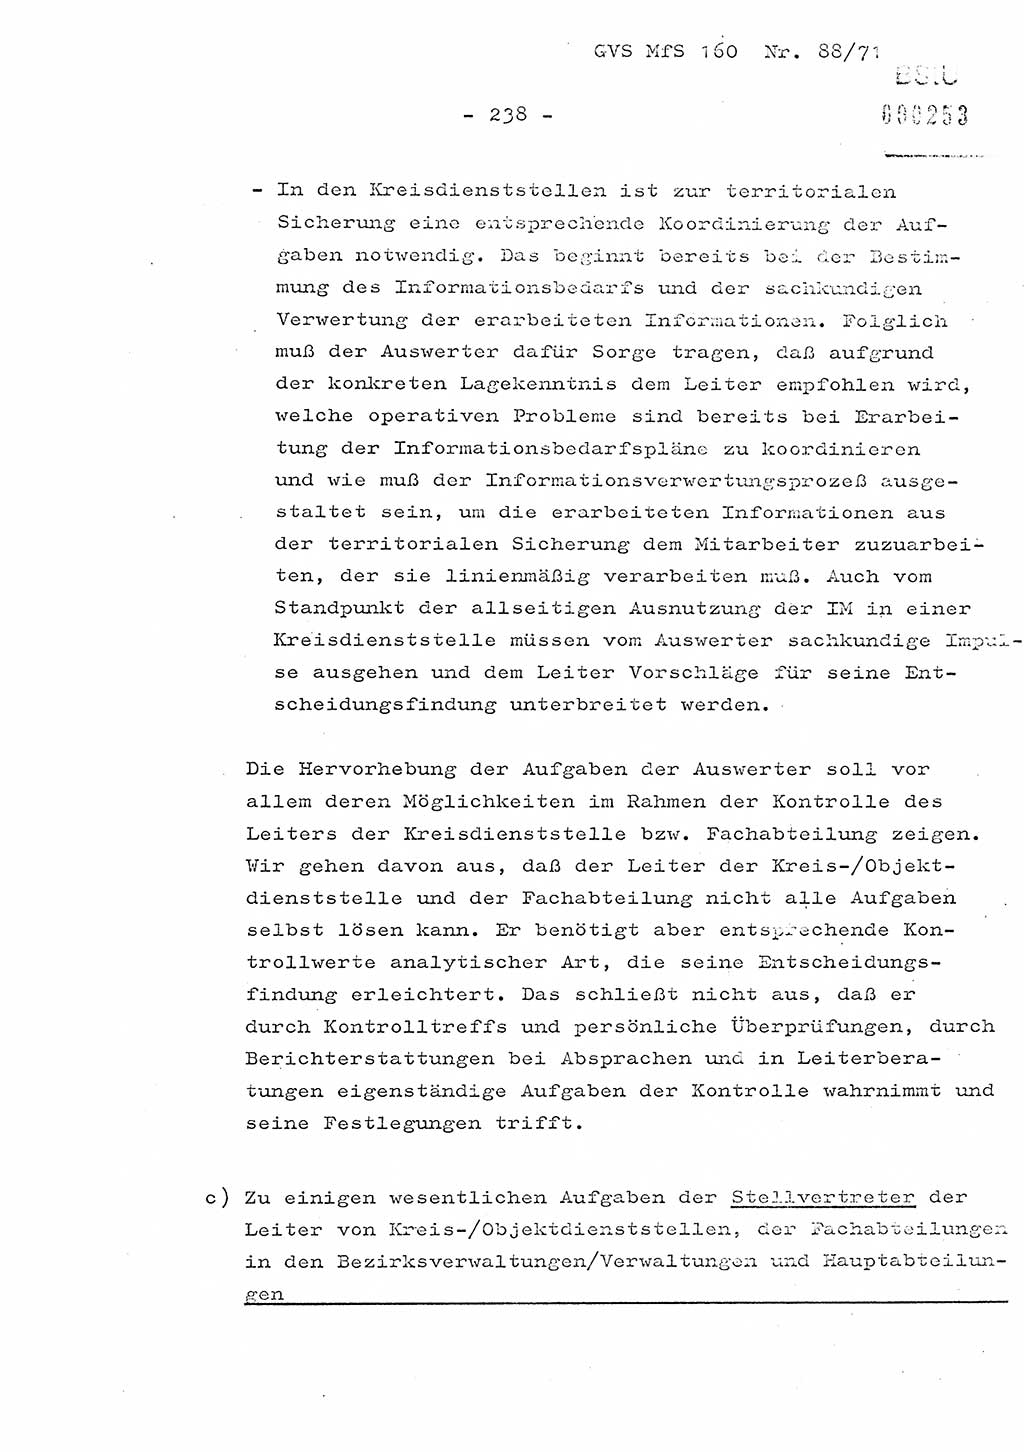 Dissertation Oberstleutnant Josef Schwarz (BV Schwerin), Major Fritz Amm (JHS), Hauptmann Peter Gräßler (JHS), Ministerium für Staatssicherheit (MfS) [Deutsche Demokratische Republik (DDR)], Juristische Hochschule (JHS), Geheime Verschlußsache (GVS) 160-88/71, Potsdam 1972, Seite 238 (Diss. MfS DDR JHS GVS 160-88/71 1972, S. 238)